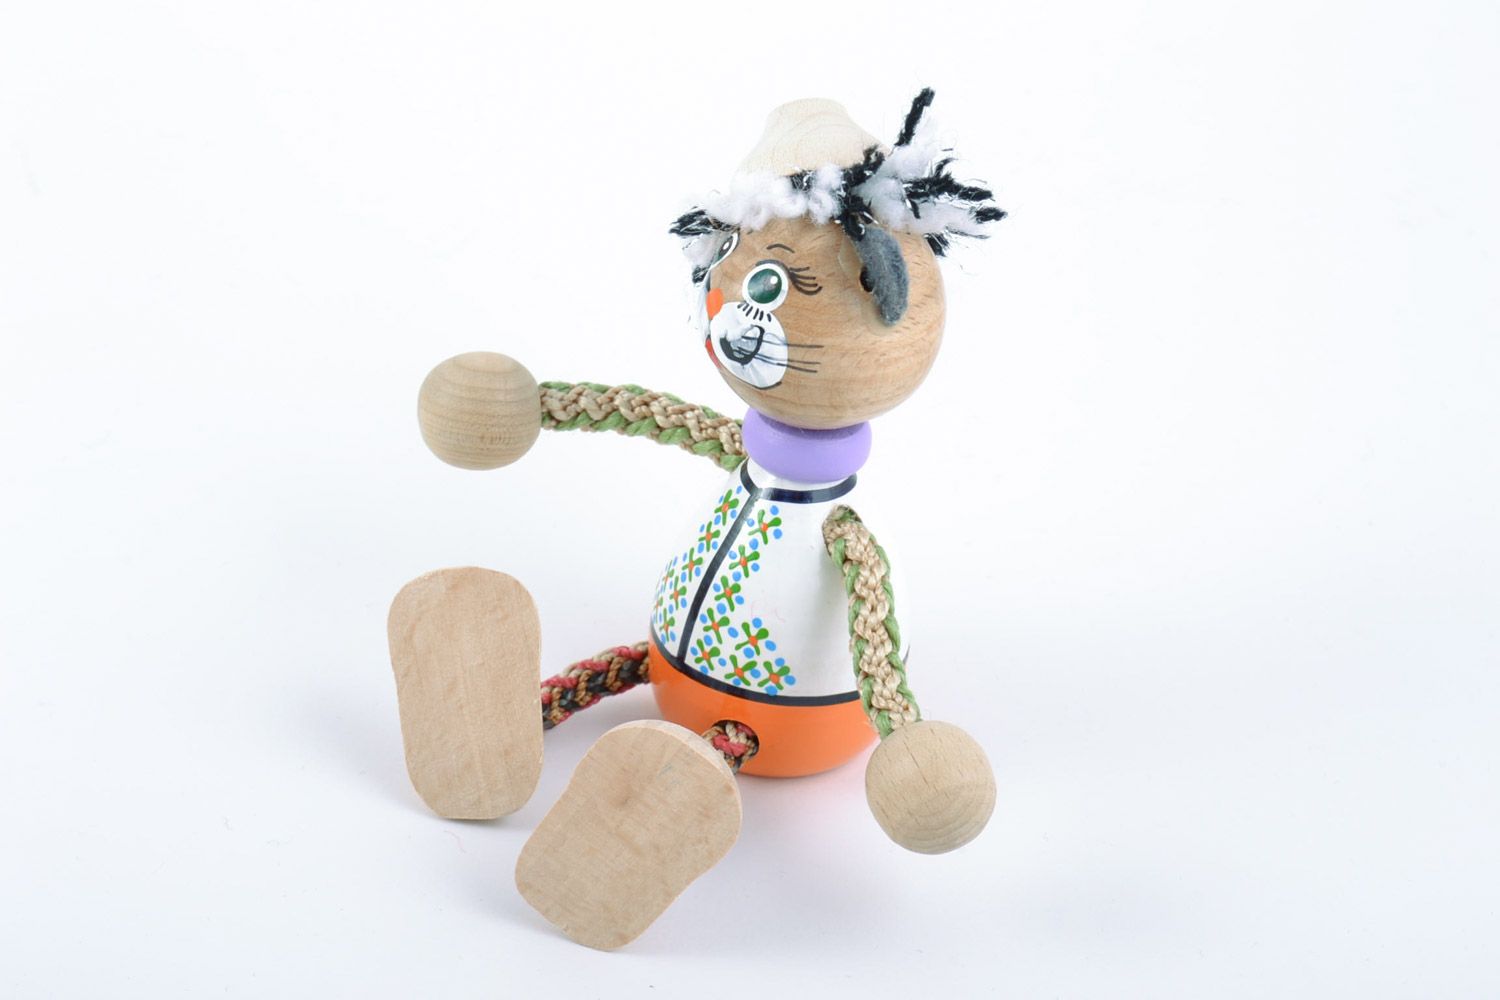 Handmade Spielzeug aus Holz in Form vom Kater öko freundlich für Kinder schön foto 4